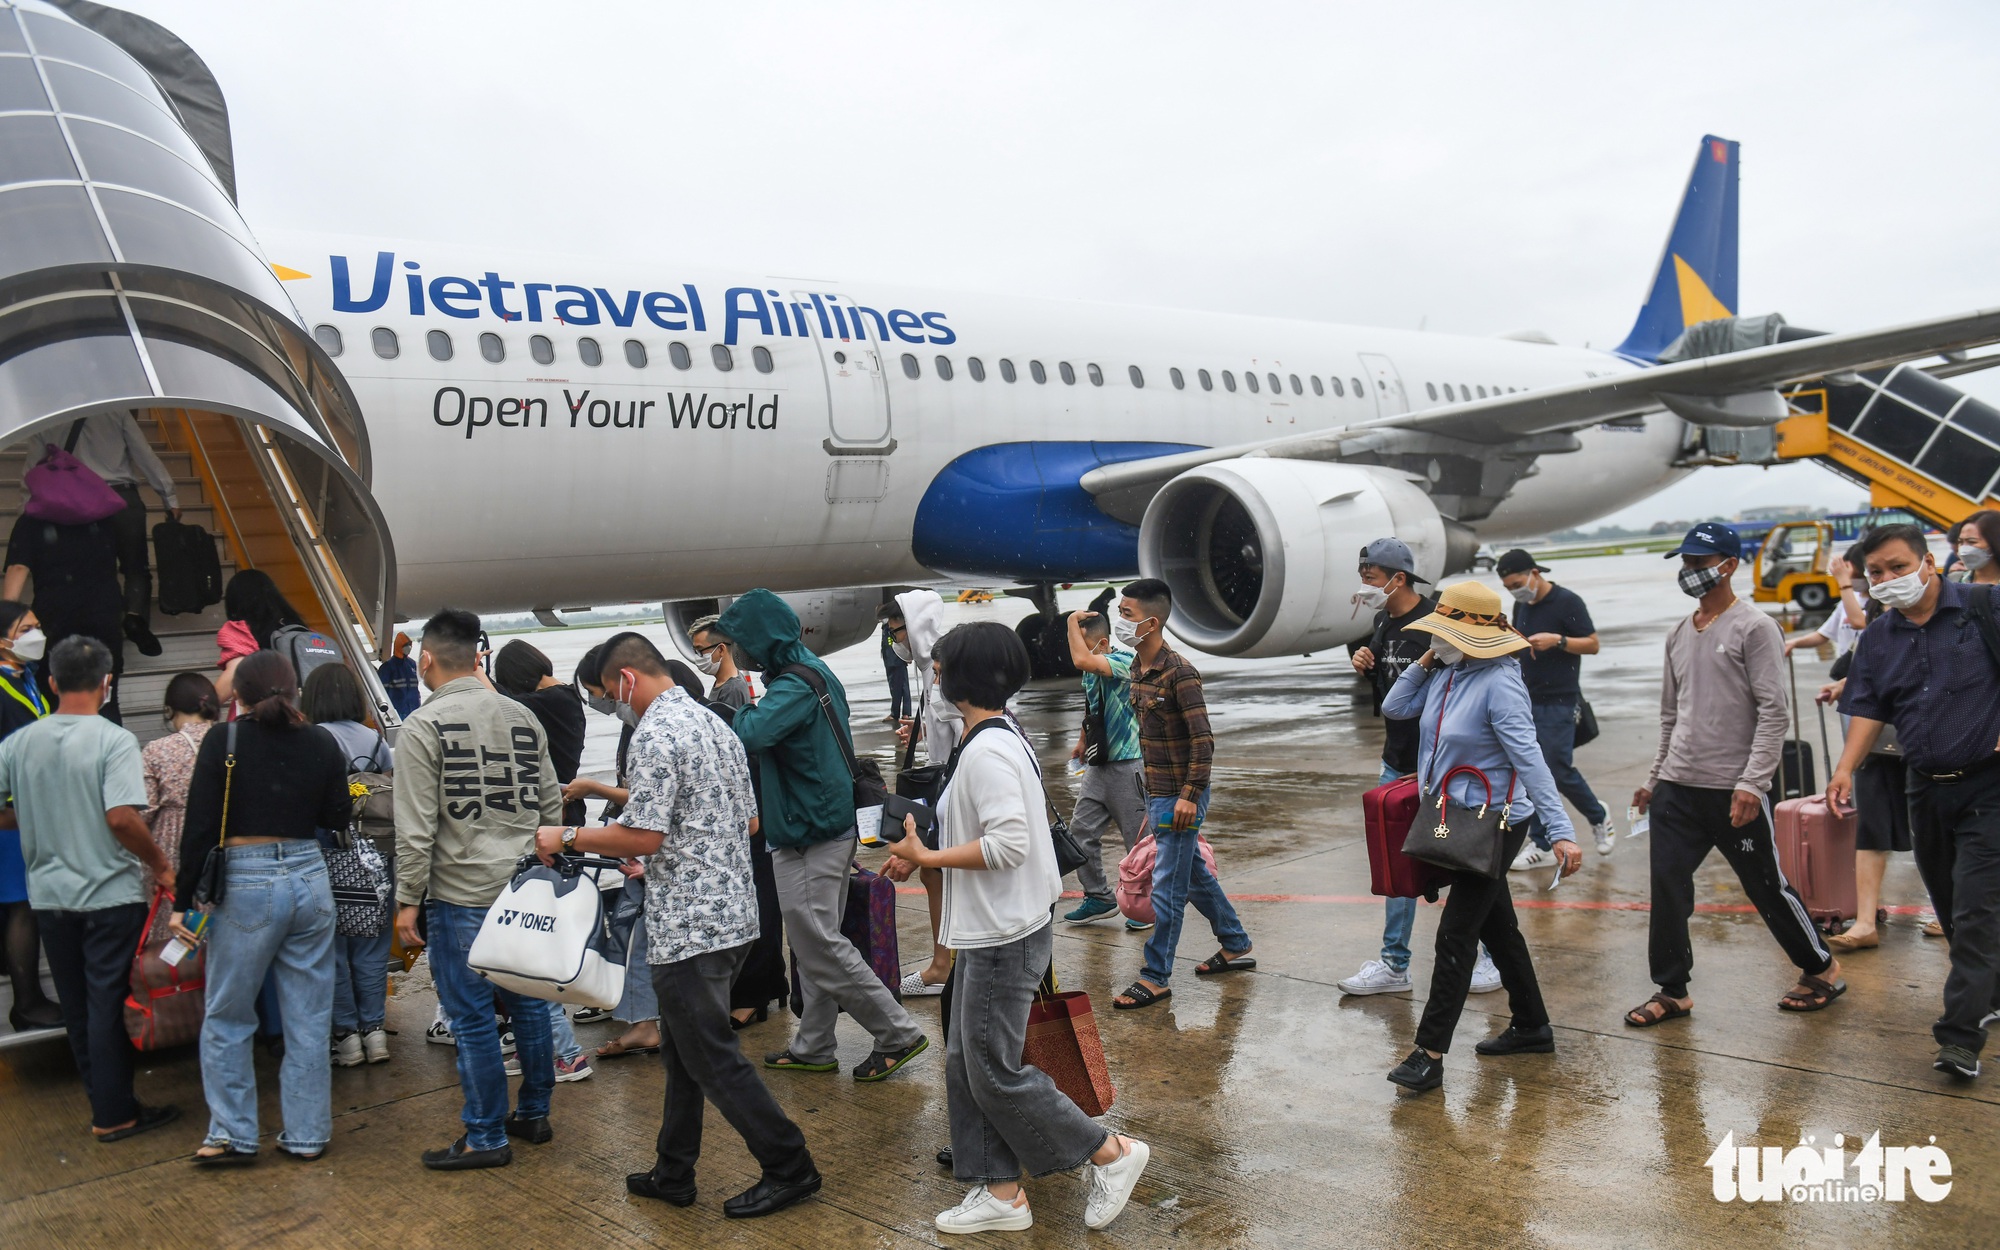 Vé máy bay Tết tăng giá mạnh, hành khách bày chiêu bay vòng Thái Lan về Hà Nội rẻ hơn - Ảnh 2.